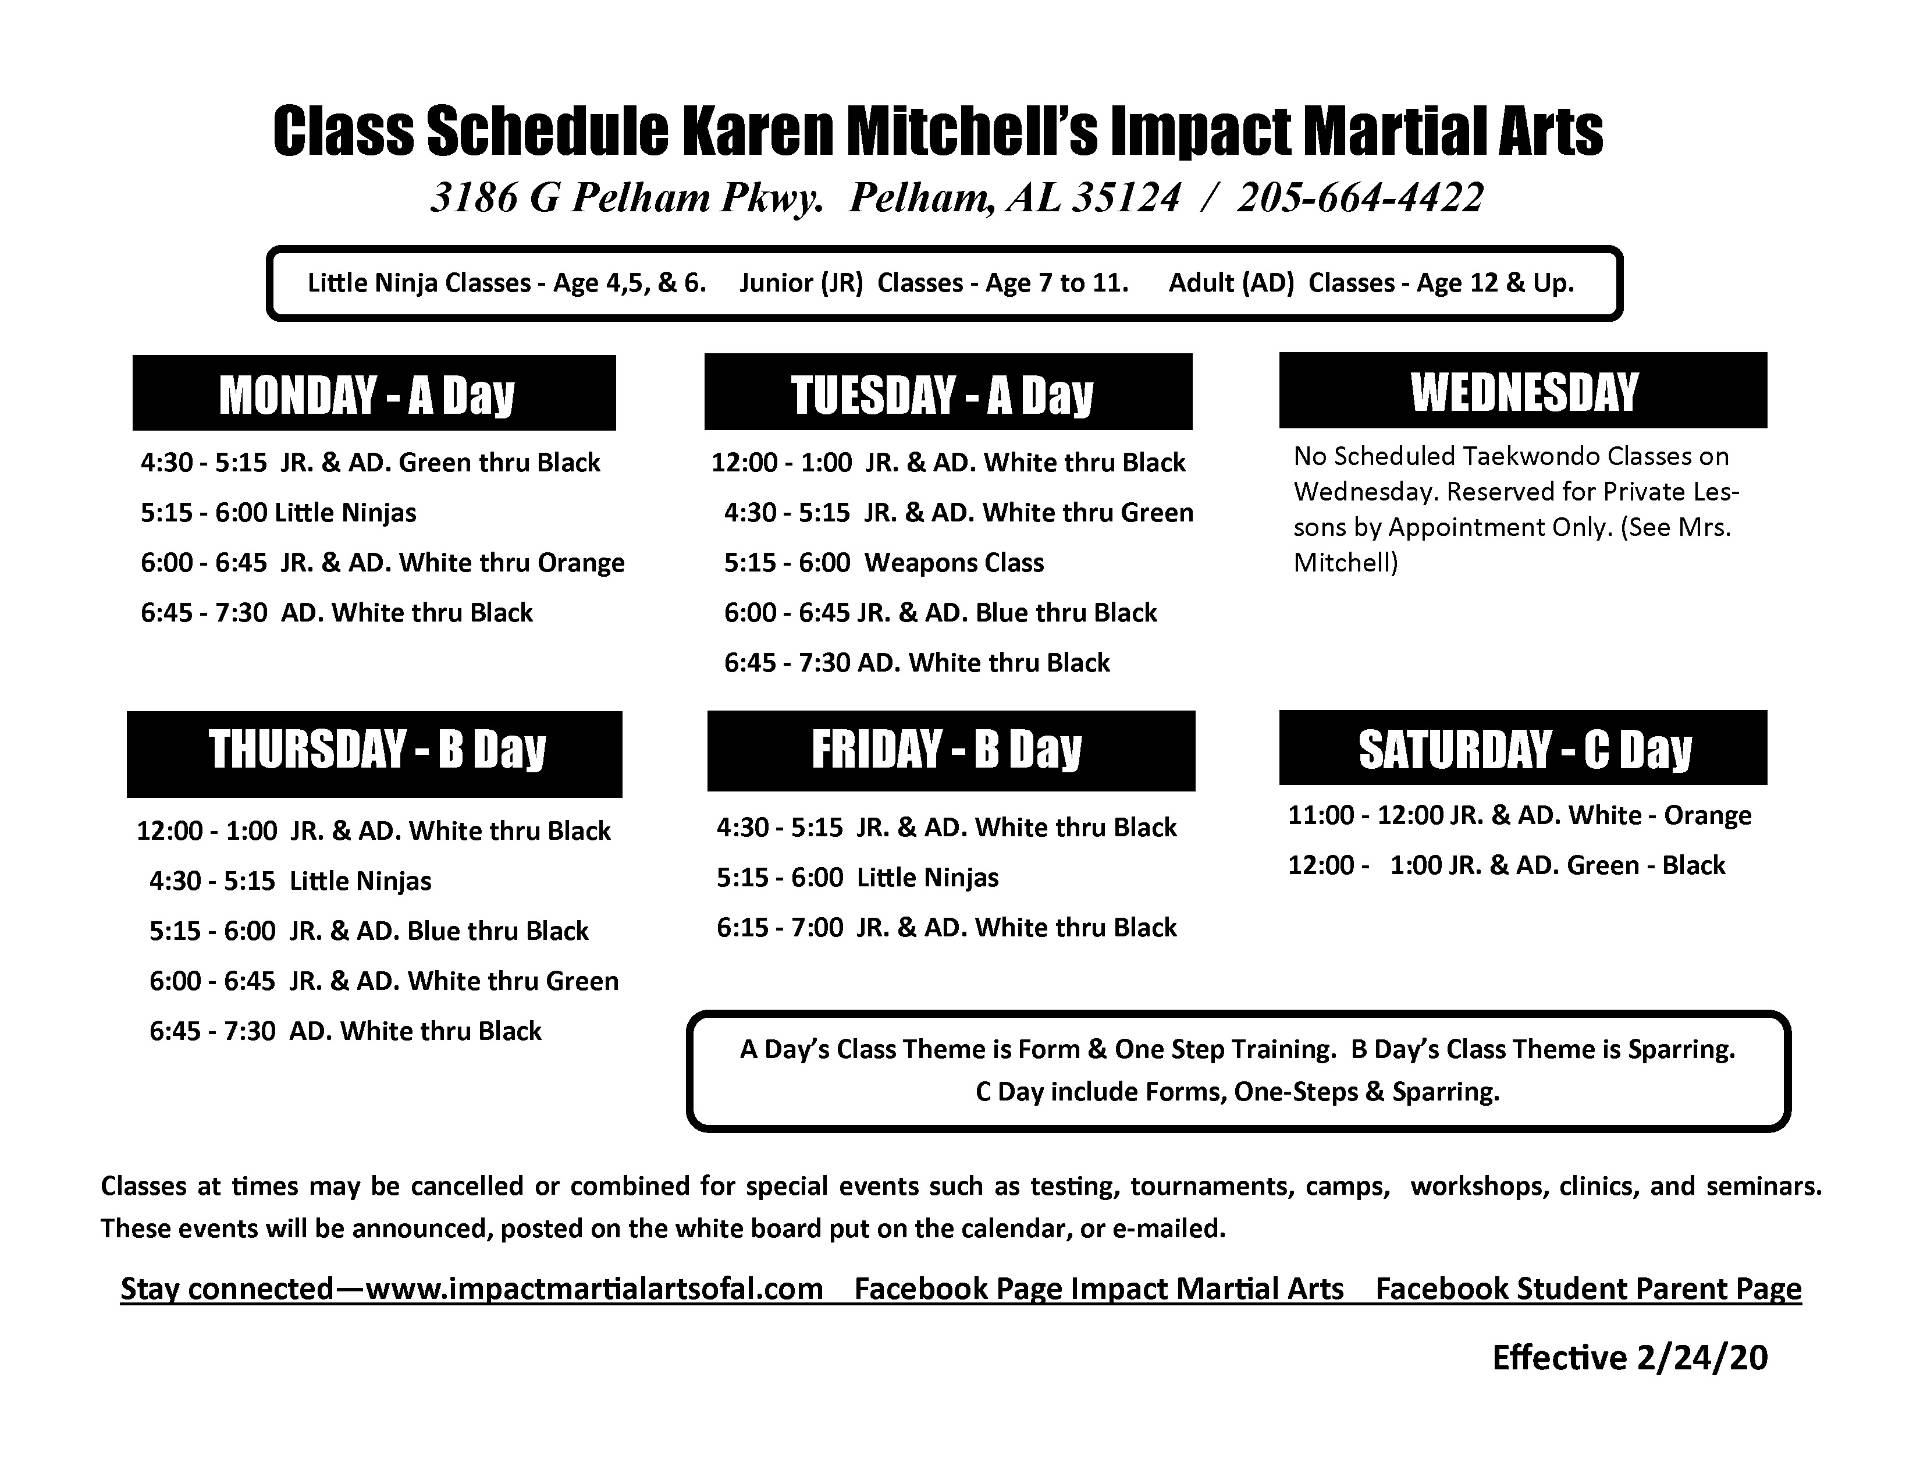 Impact Martial Arts - Pelham, AL - Class Schedule 2018